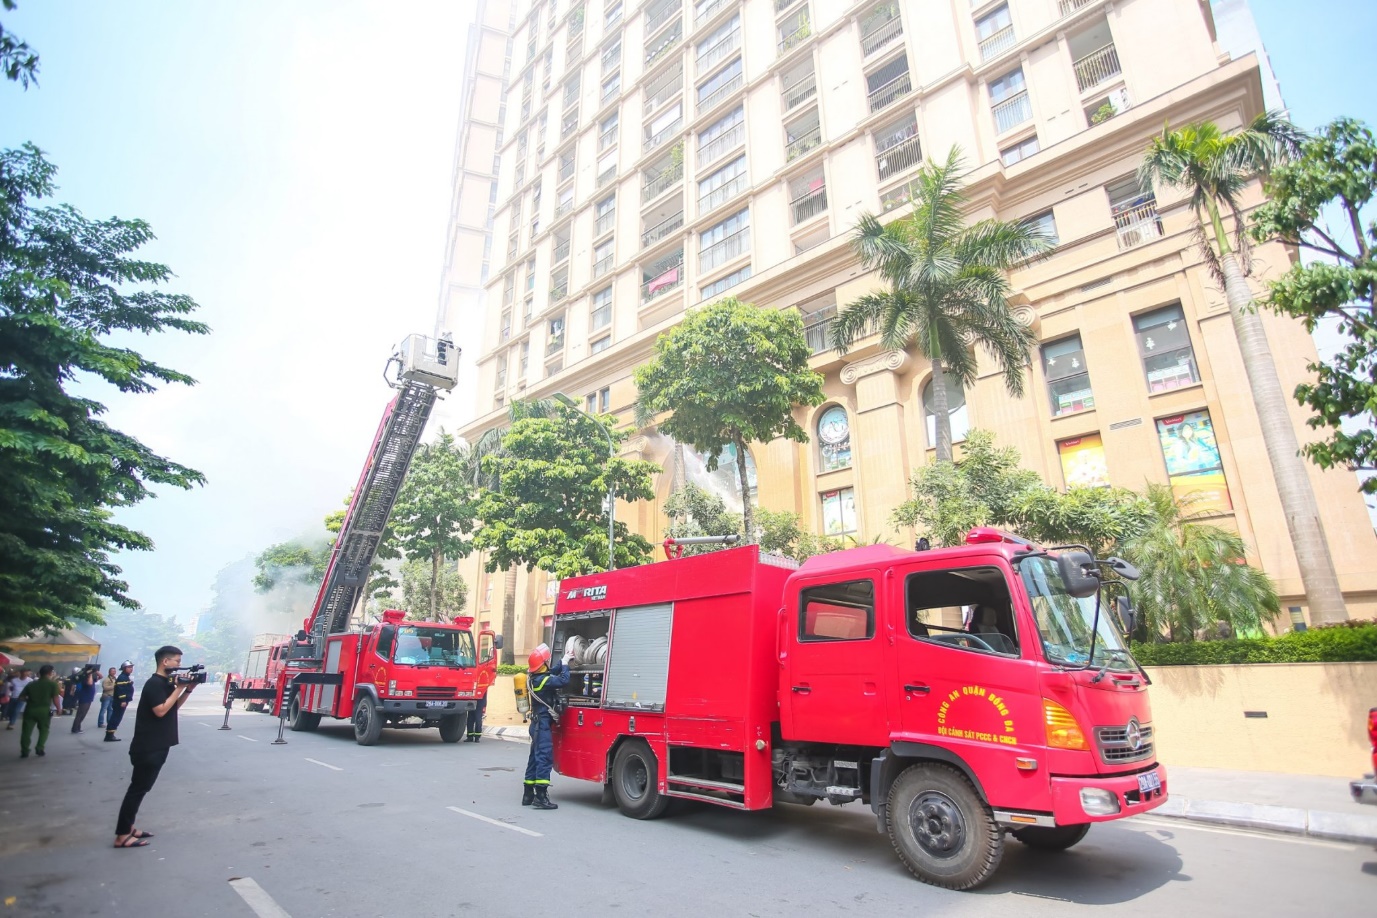 Trước tình hình trên, lượng cảnh sát PCCC&CNCH đã ngay lập tức huy động 3 xe chữa cháy, 2 xe cứu nạn, 1 xe thang và máy bơm chữa cháy bơm nước trực tiếp từ hồ Hoàng Cầu đến chữa cháy và cứu hộ cư dân